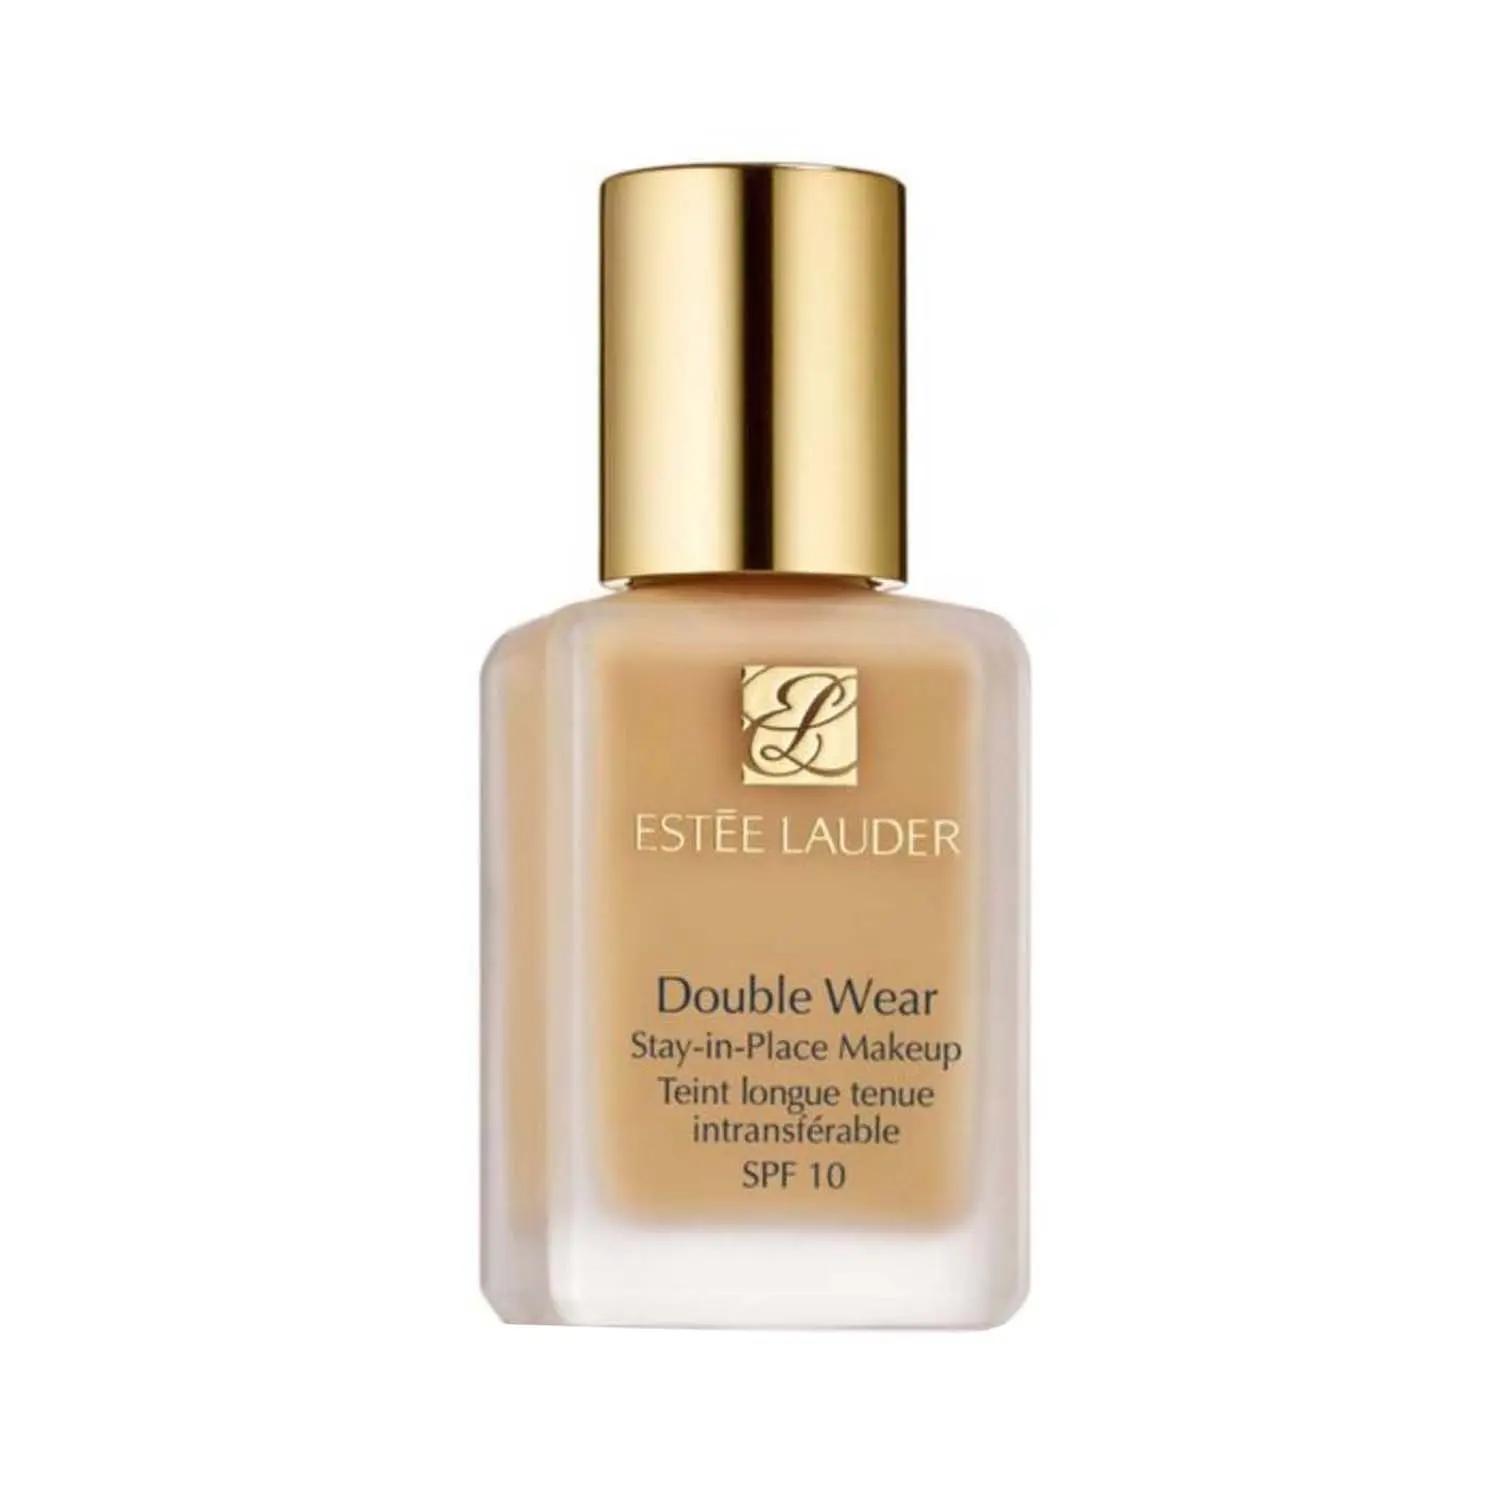 estee lauder double wear stay-in-place makeup foundation spf 10 - 2n1 desert beige (15ml)